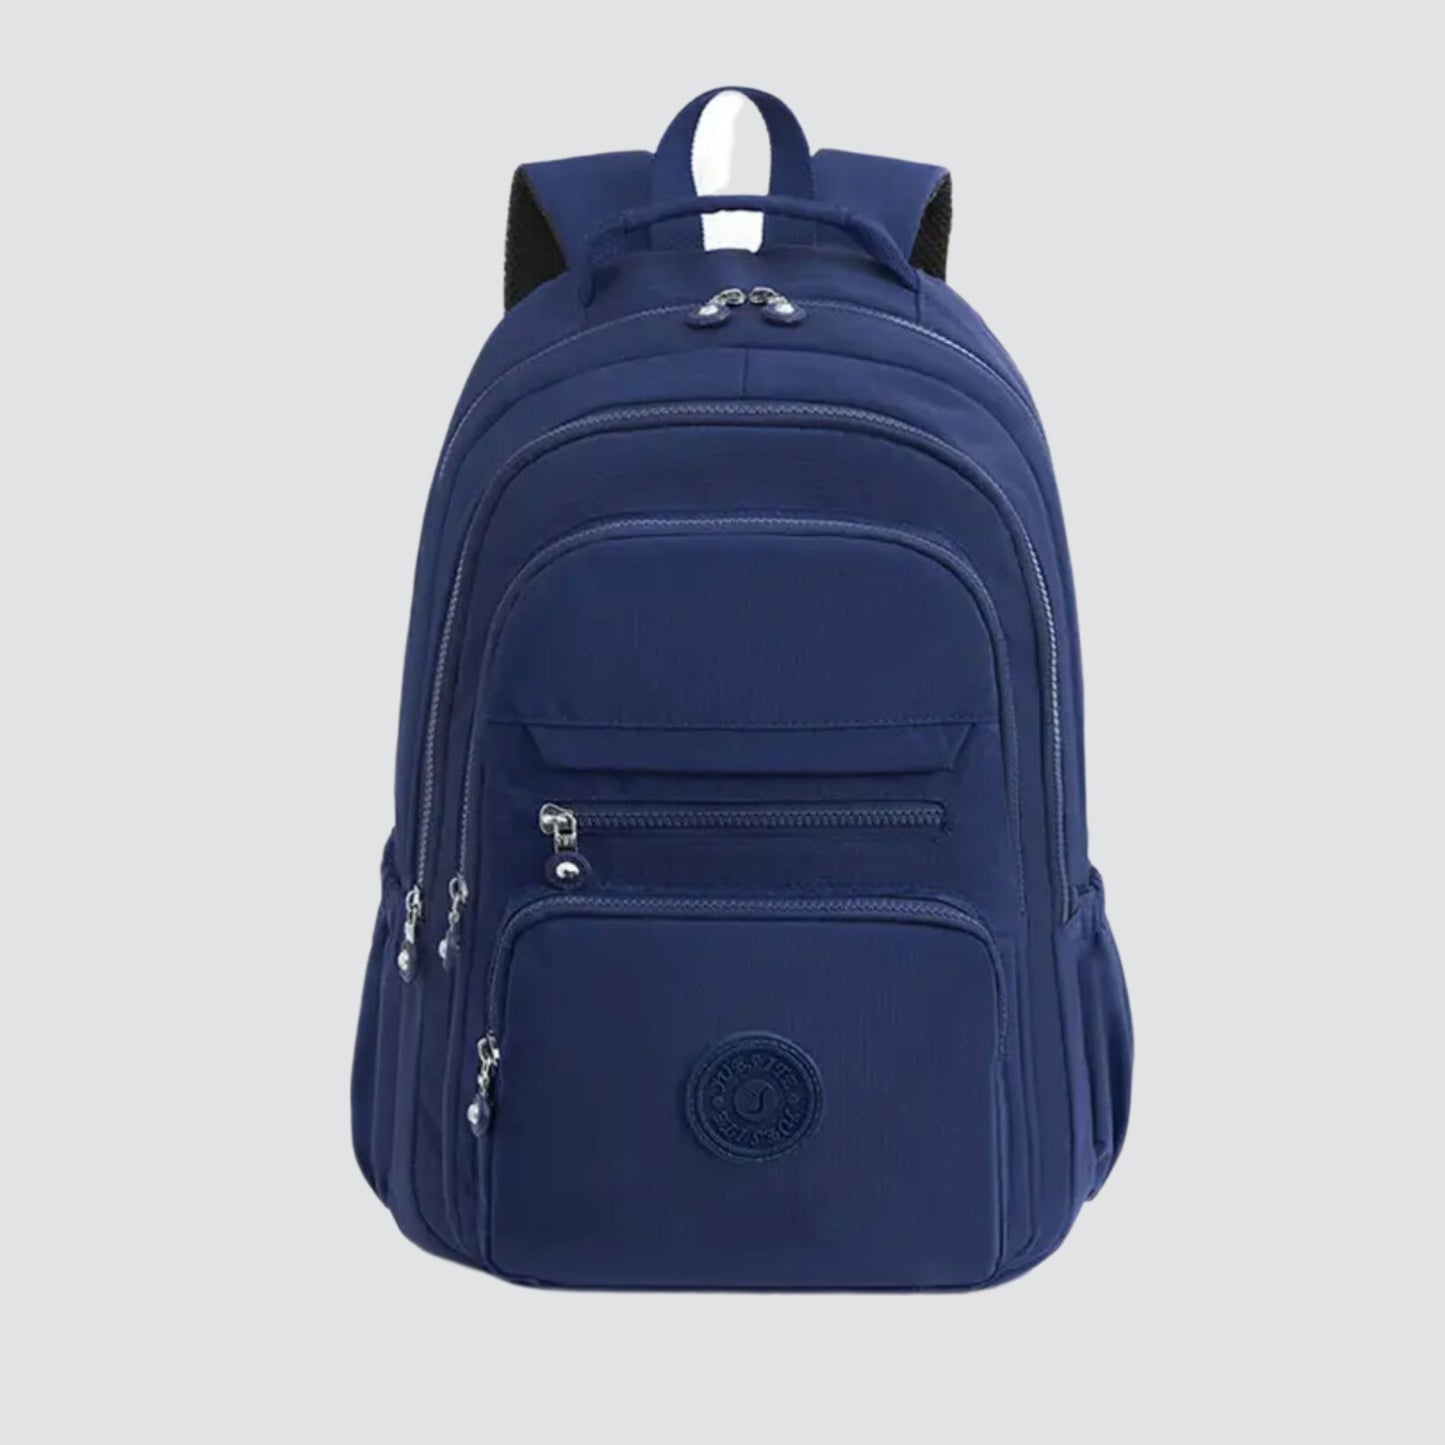 Navy Blue Sport Backpack